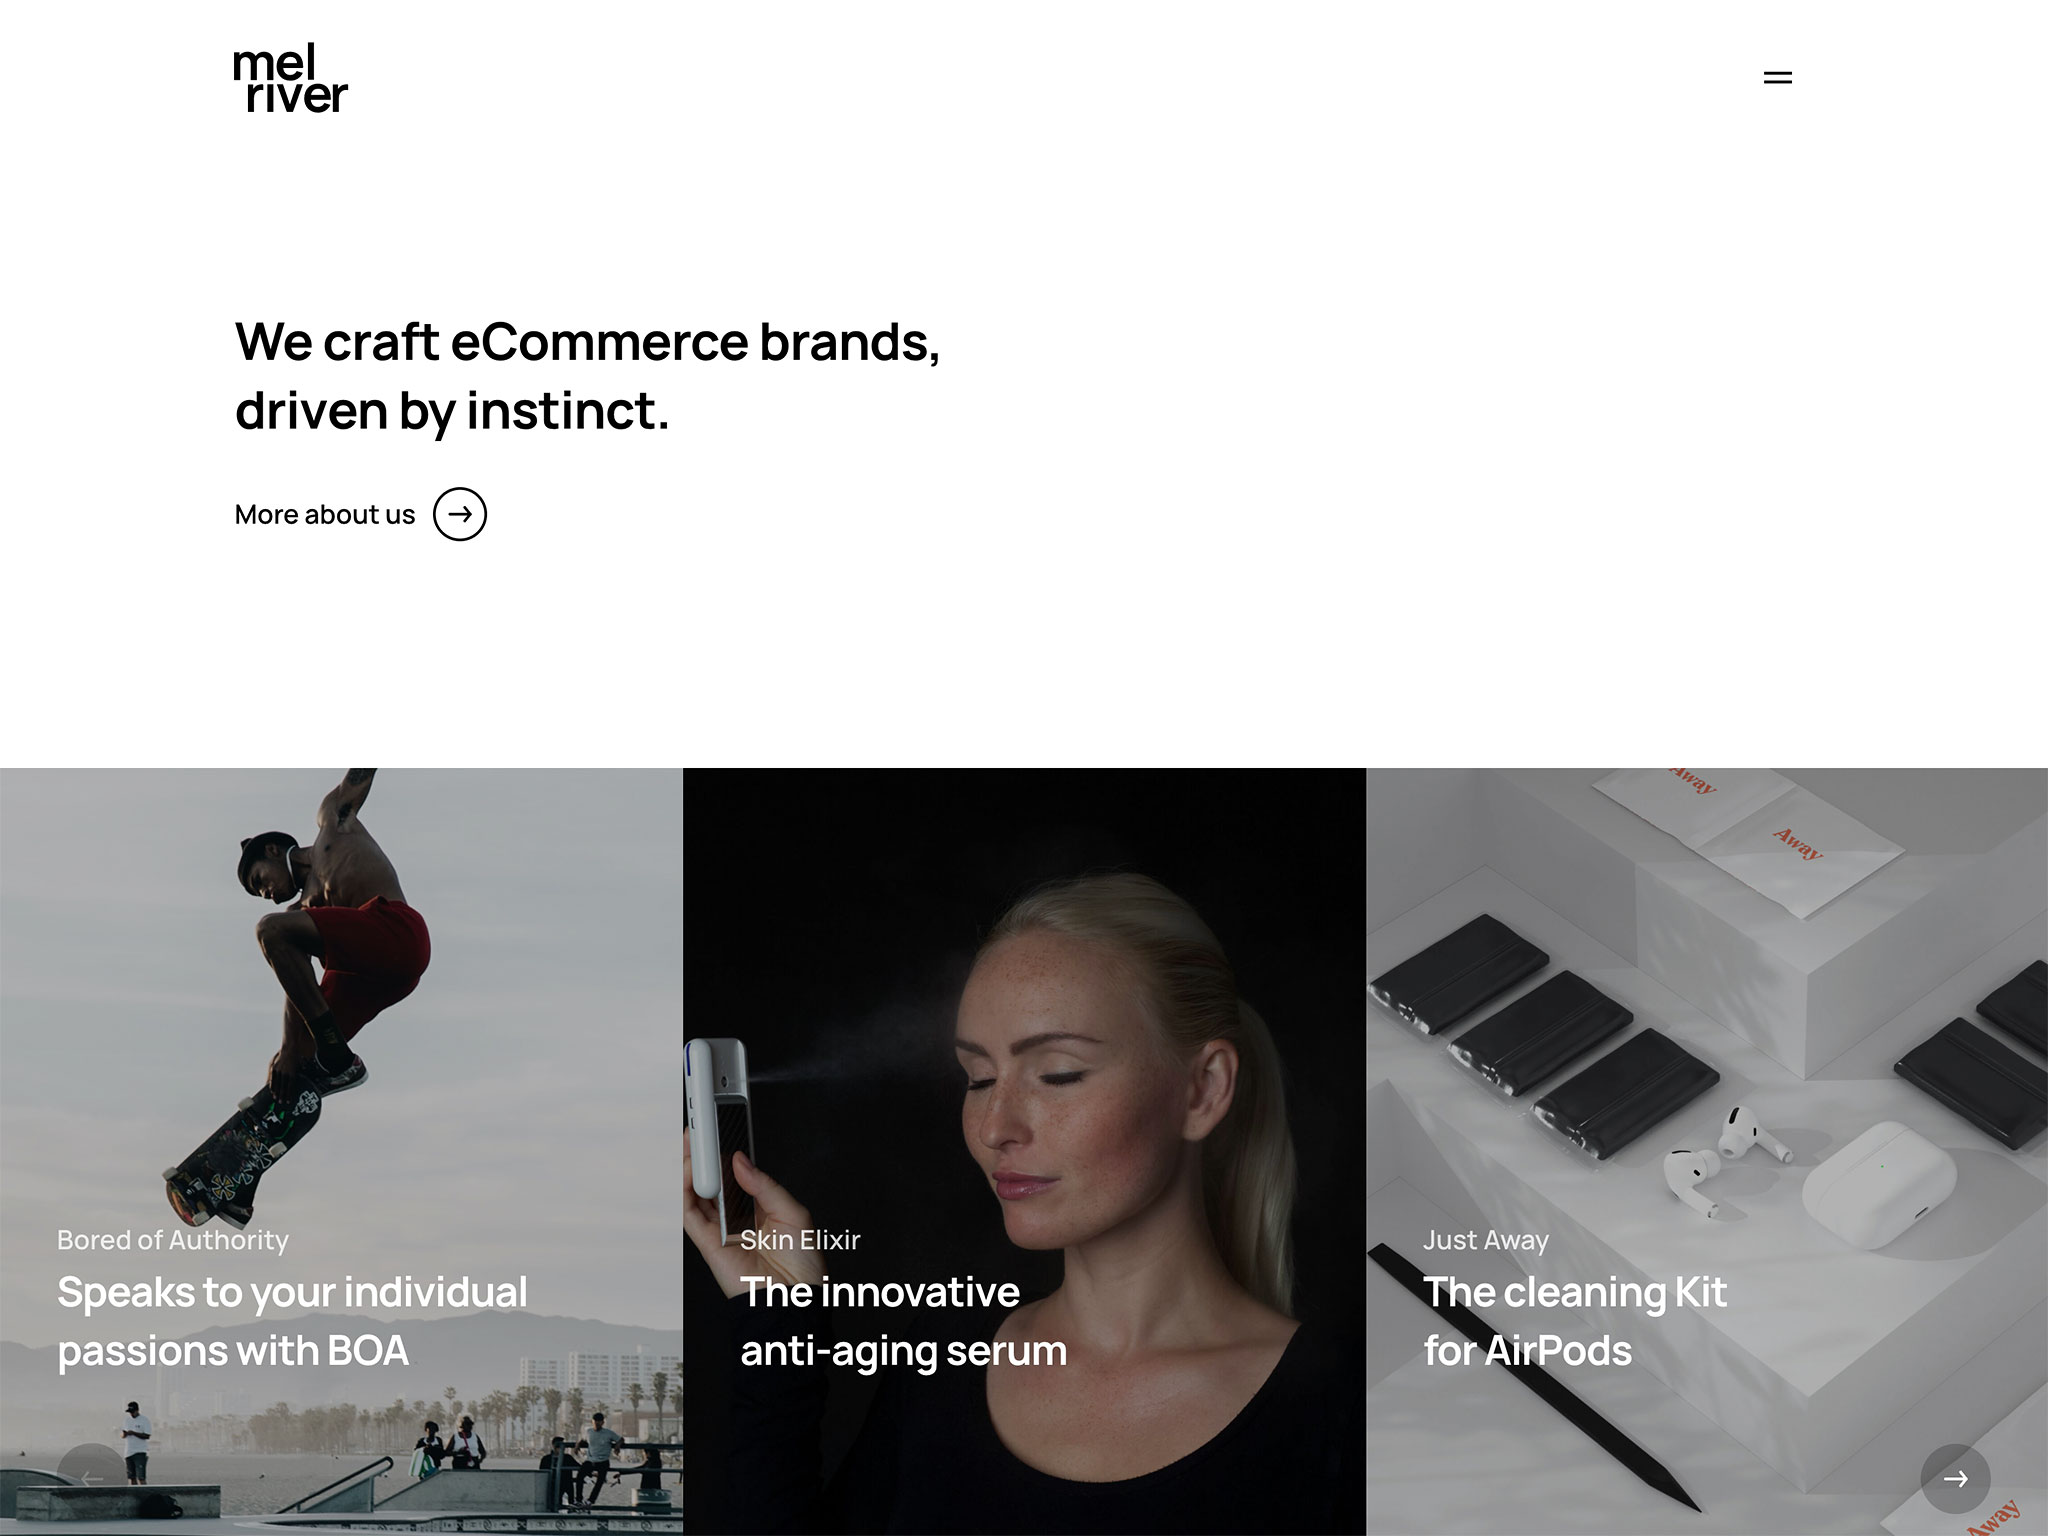 Melriver – We craft eCommerce brands